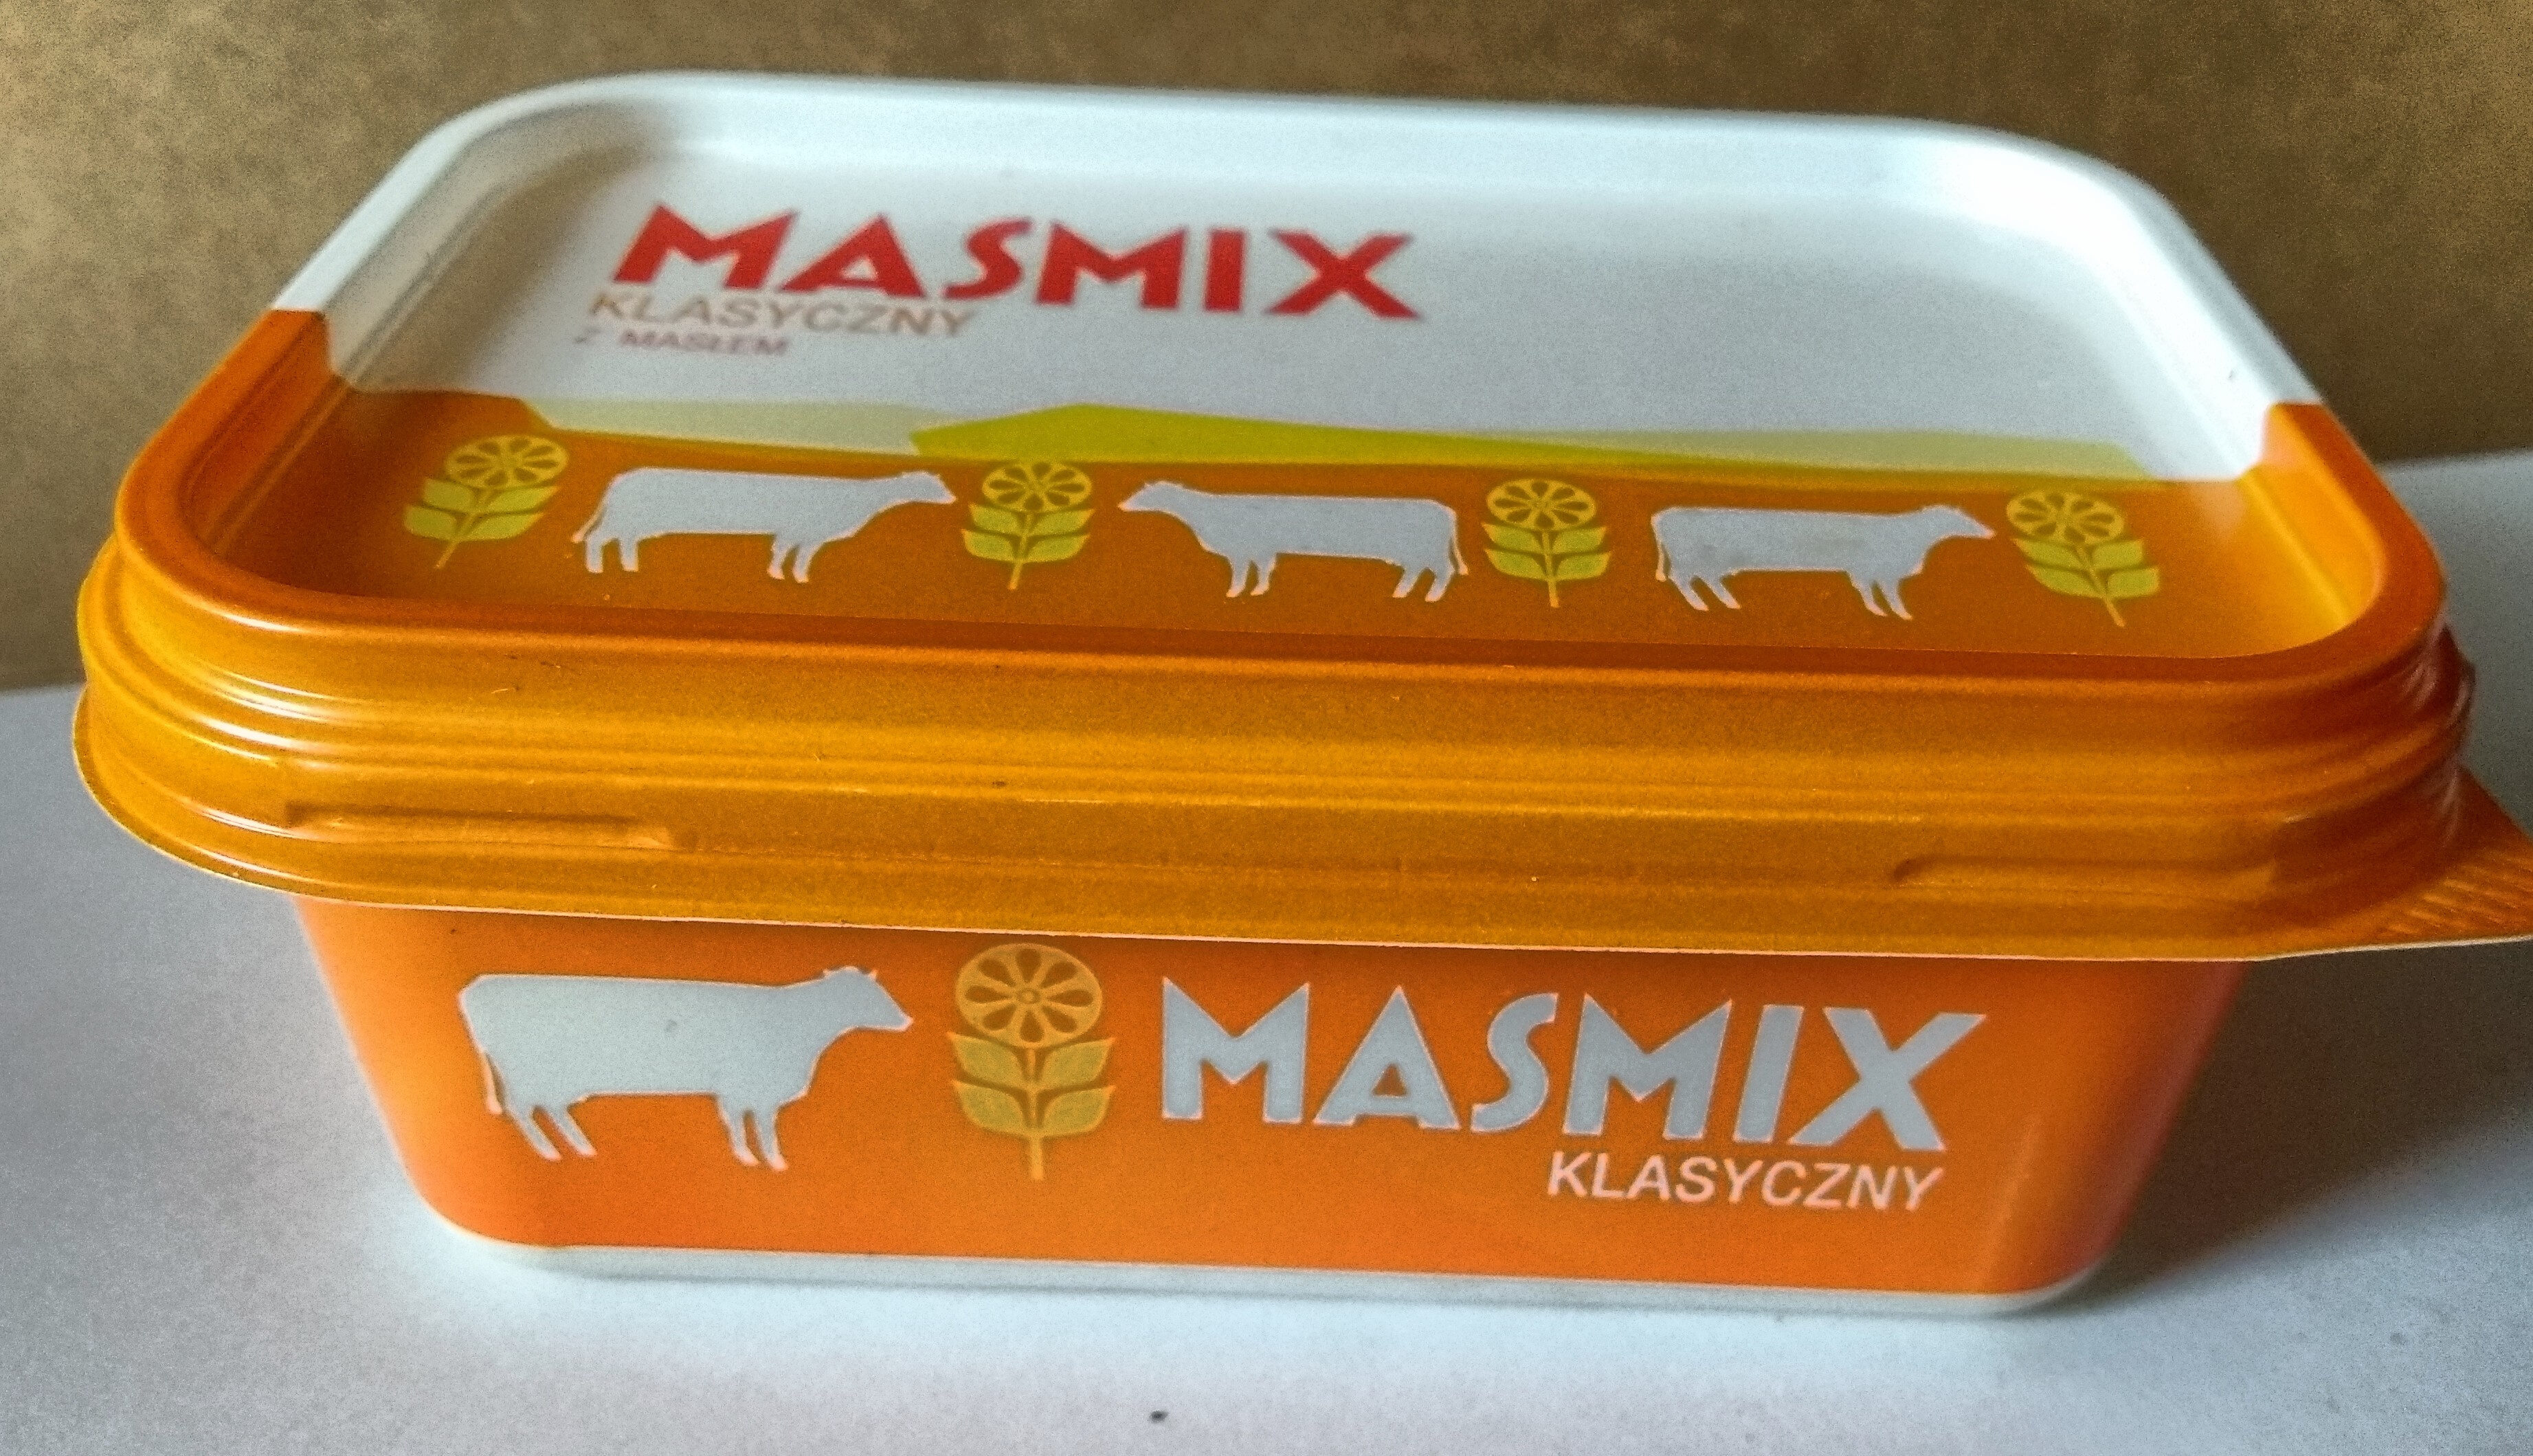 Masmix klasyczny z masłem - Product - pl